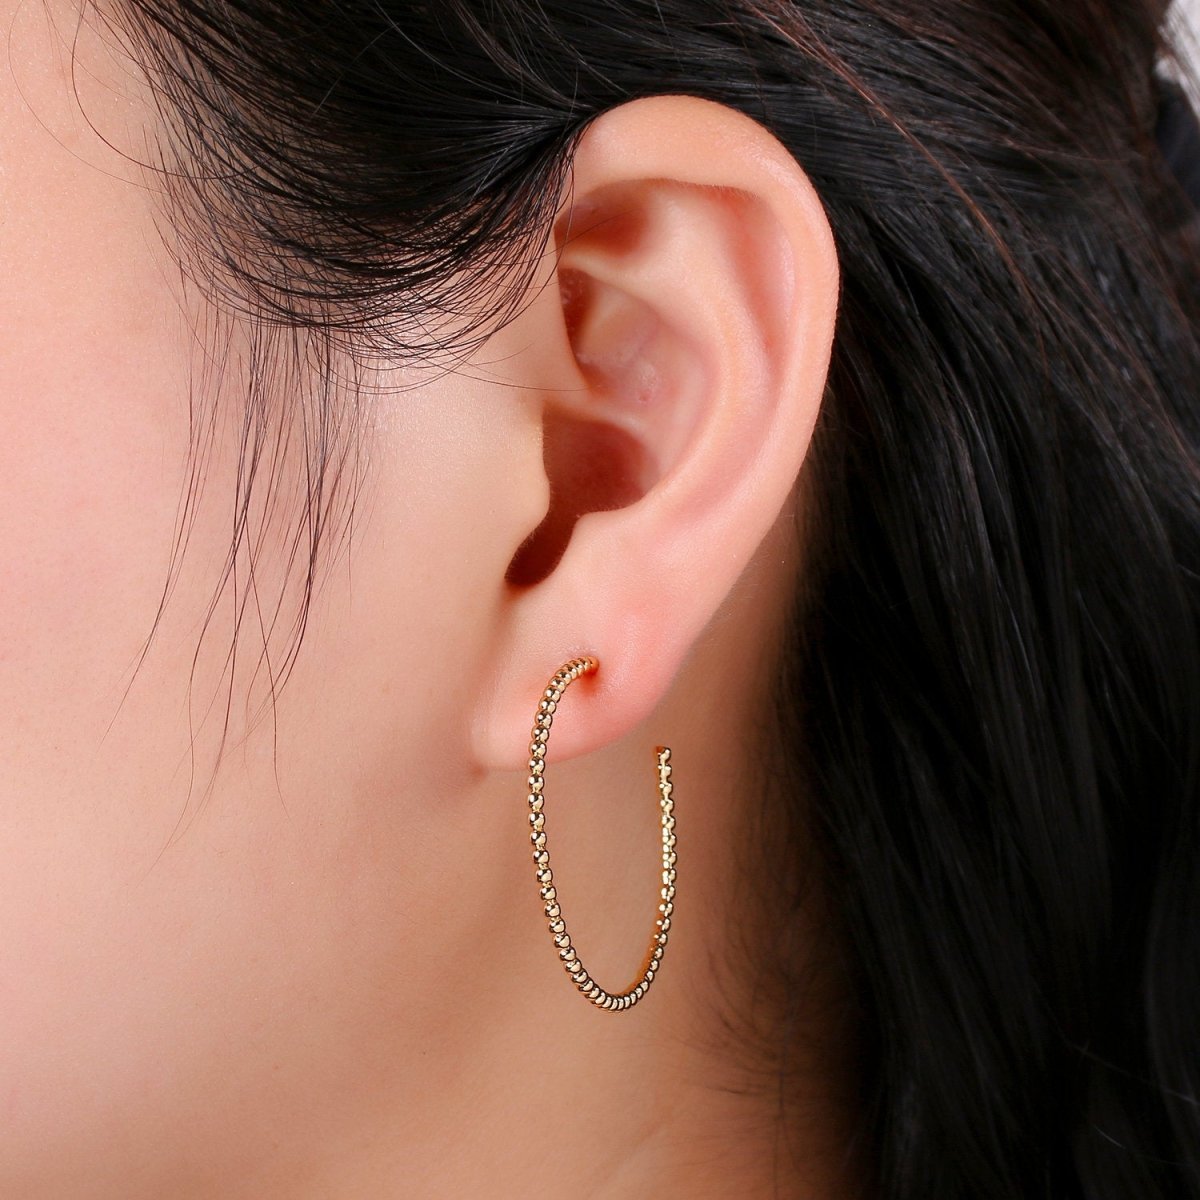 Gold Ball Hoop Earrings, Beaded Hoop Earrings, Boho Hoop Earrings, Gold Ball Hoop Earrings 30mm Silver Hoop Earring Q-198 Q-199 - DLUXCA